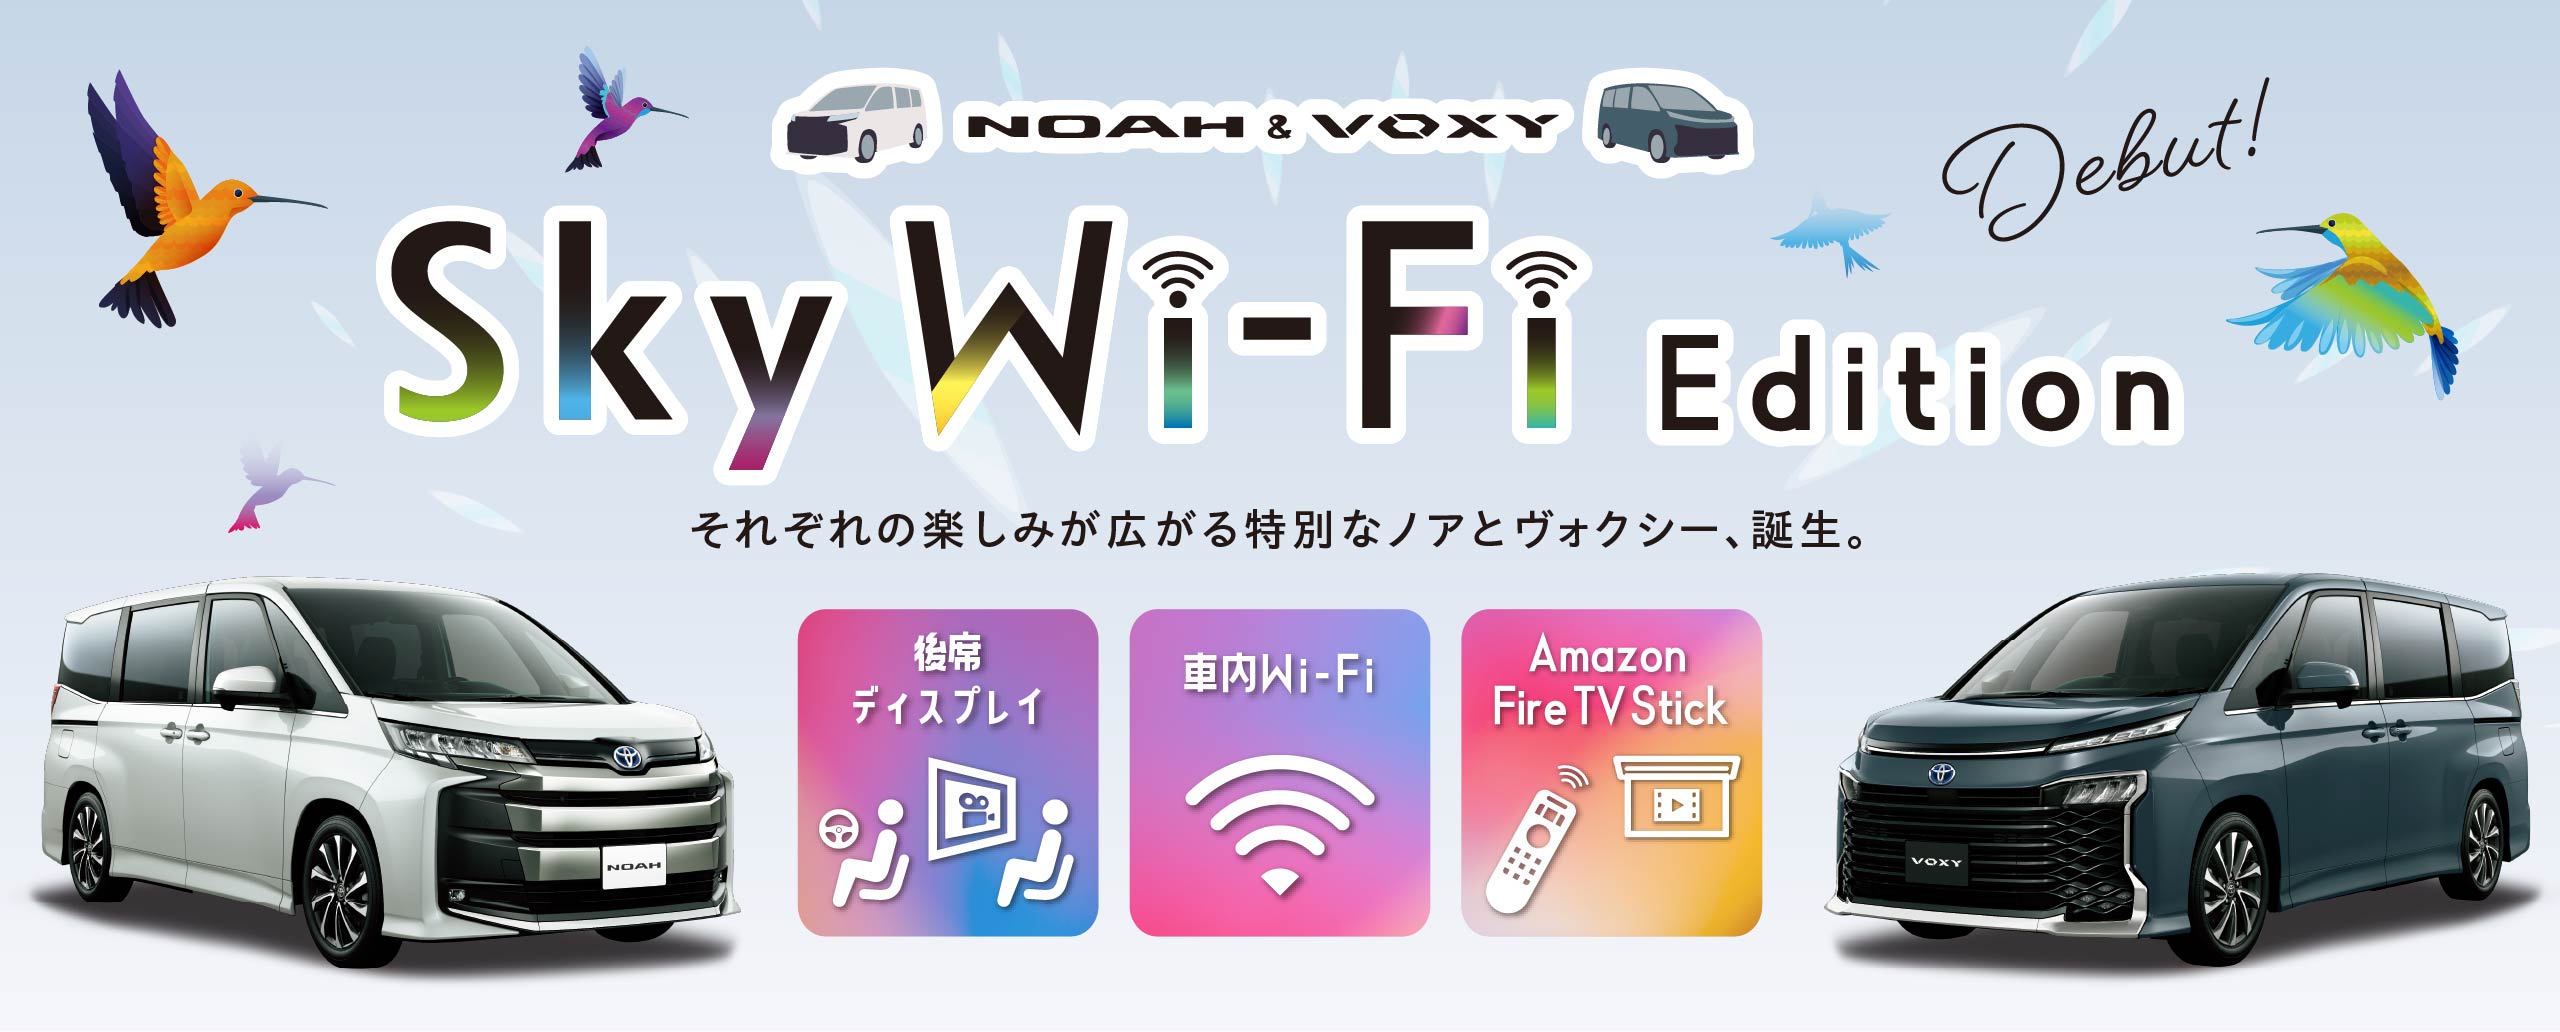 大空を飛ぶ鳥のようにクルマをもっと楽しく、自由に! NOAH&VOXY Sky Wi-Fi Edition デビュー!